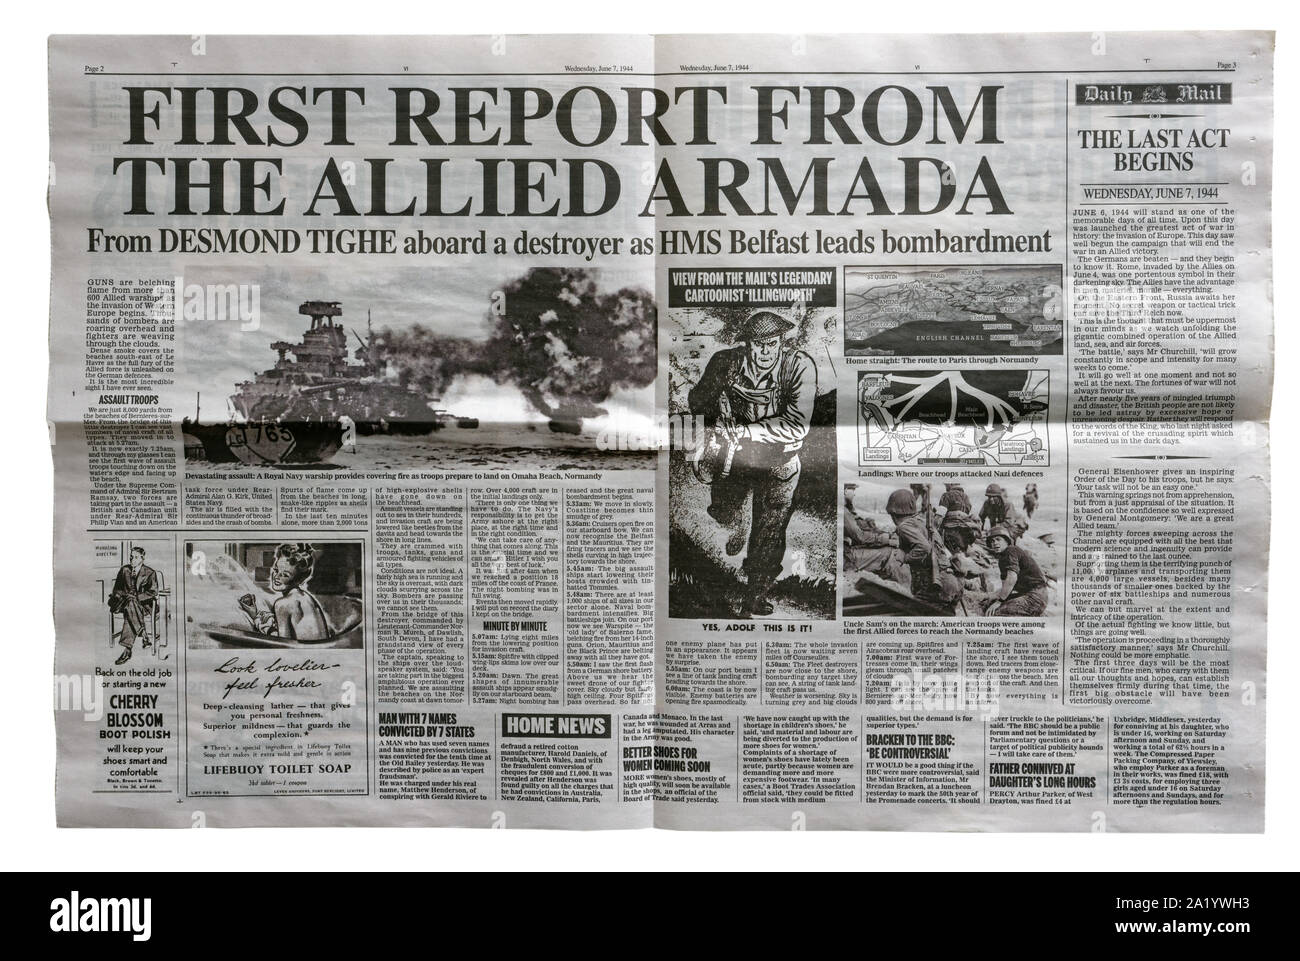 Una reproducción dentro de la página del Daily Mail del 7 de junio de 1944, con noticias sobre la invasión aliada de Francia después del Día D. Foto de stock